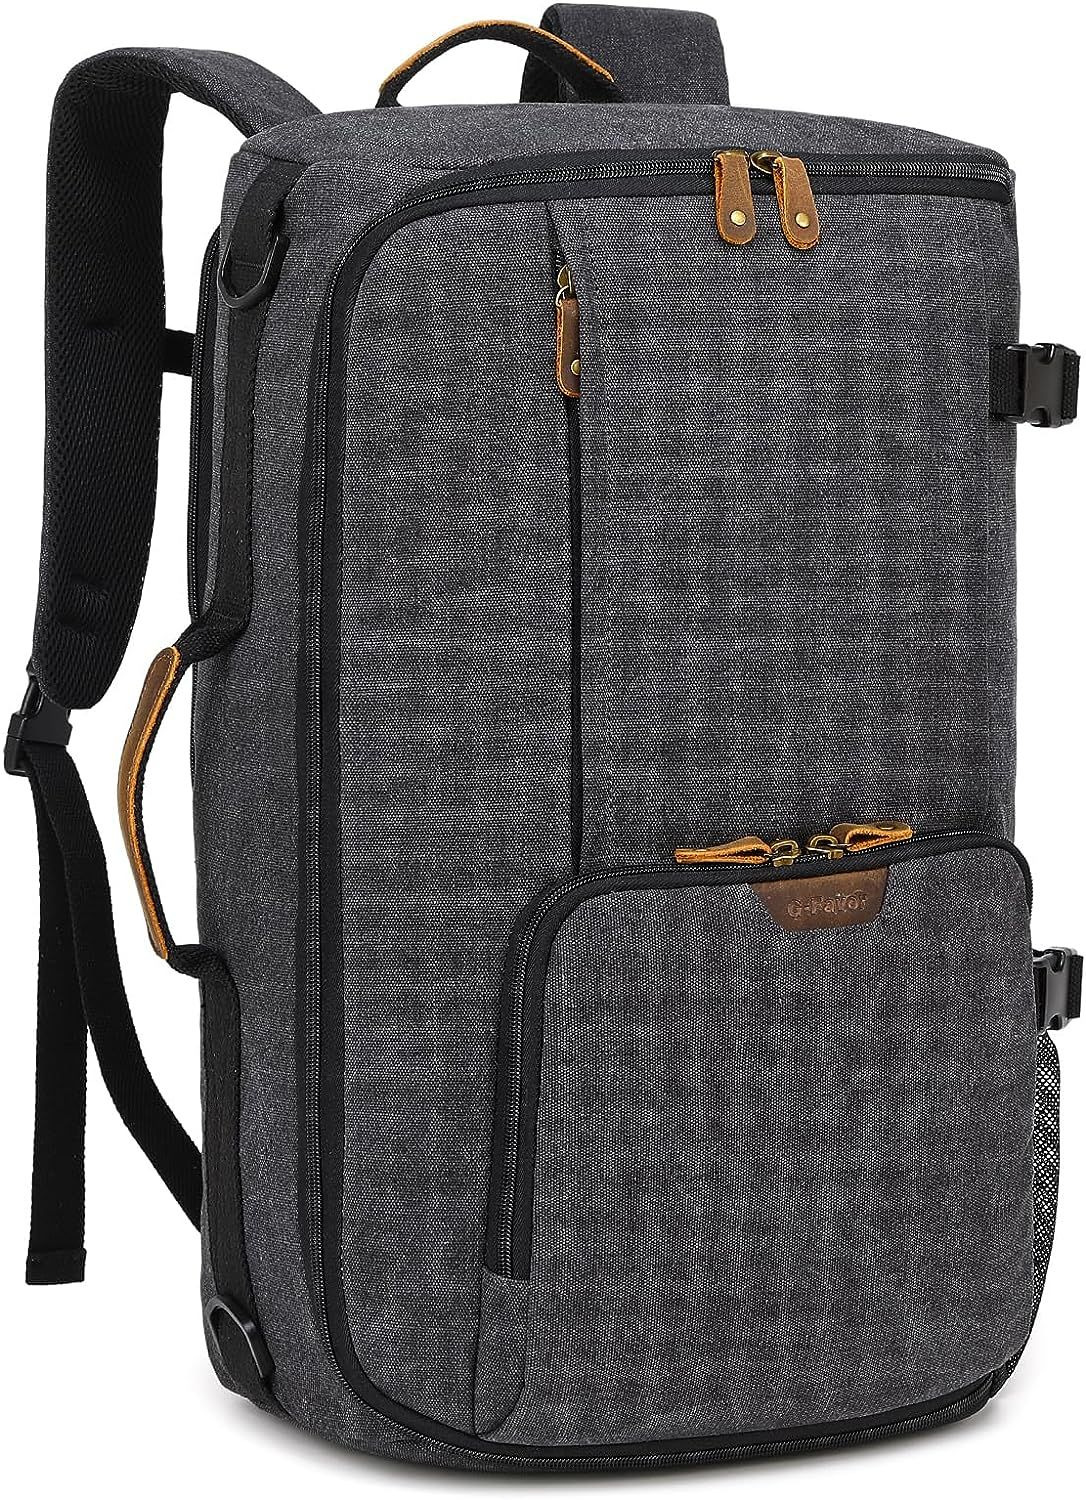 G-FAVOR 40L Travel Backpack, Vintage Canvas Rucksack Convertible Duffel Bag... 